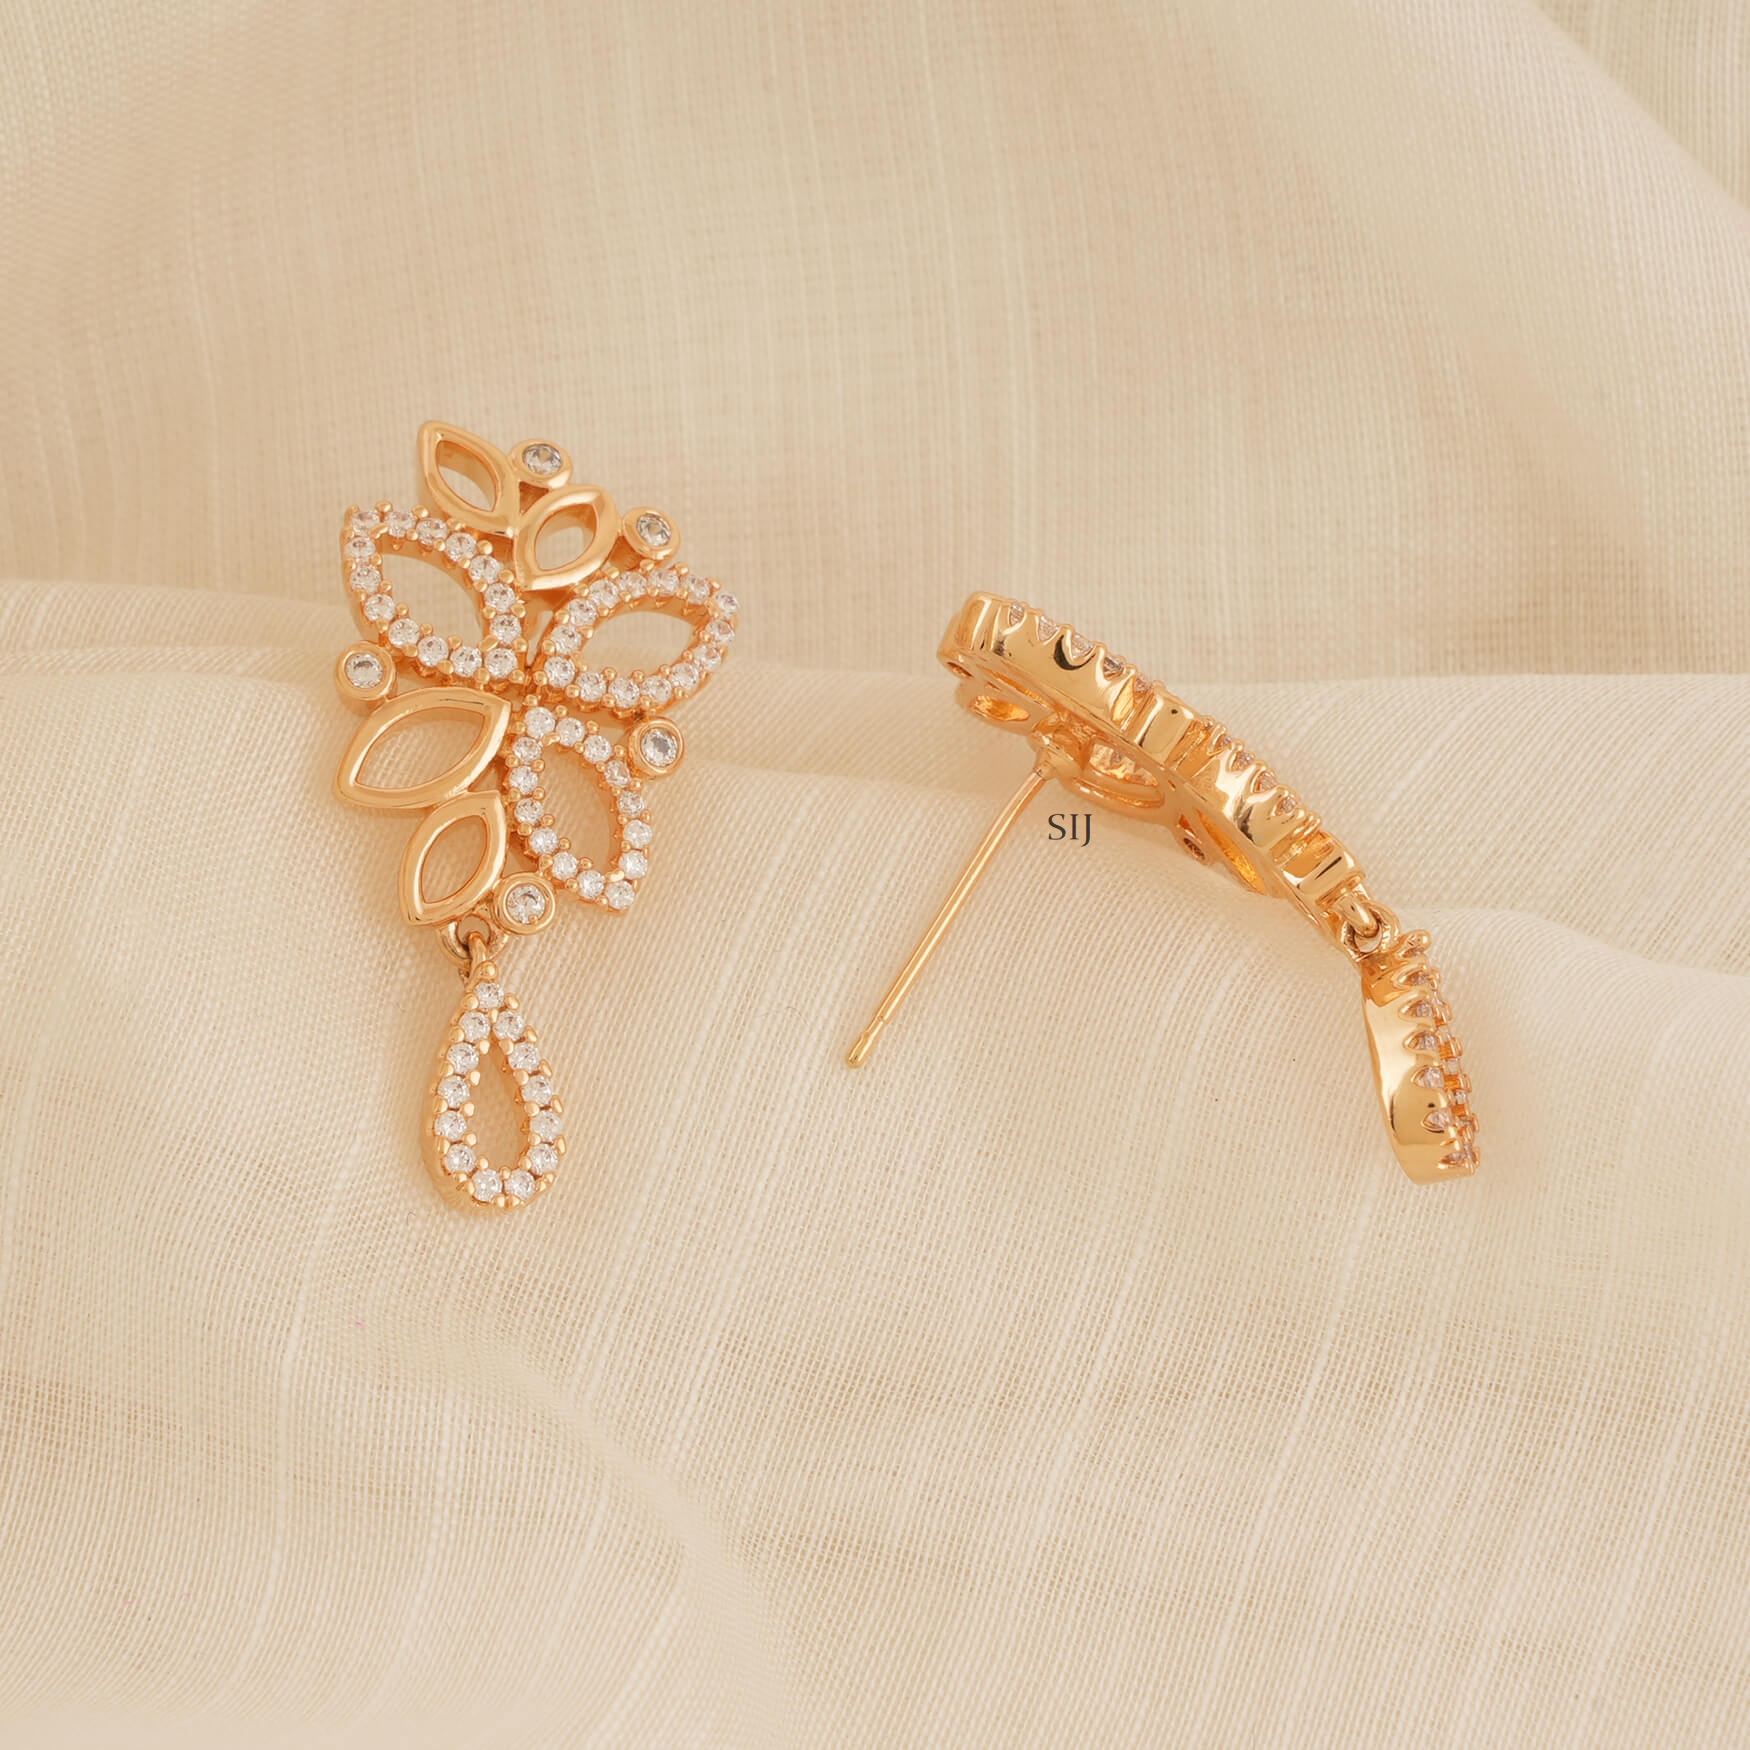 One Gram Gold Leaf Design CZ Stones Necklace Set